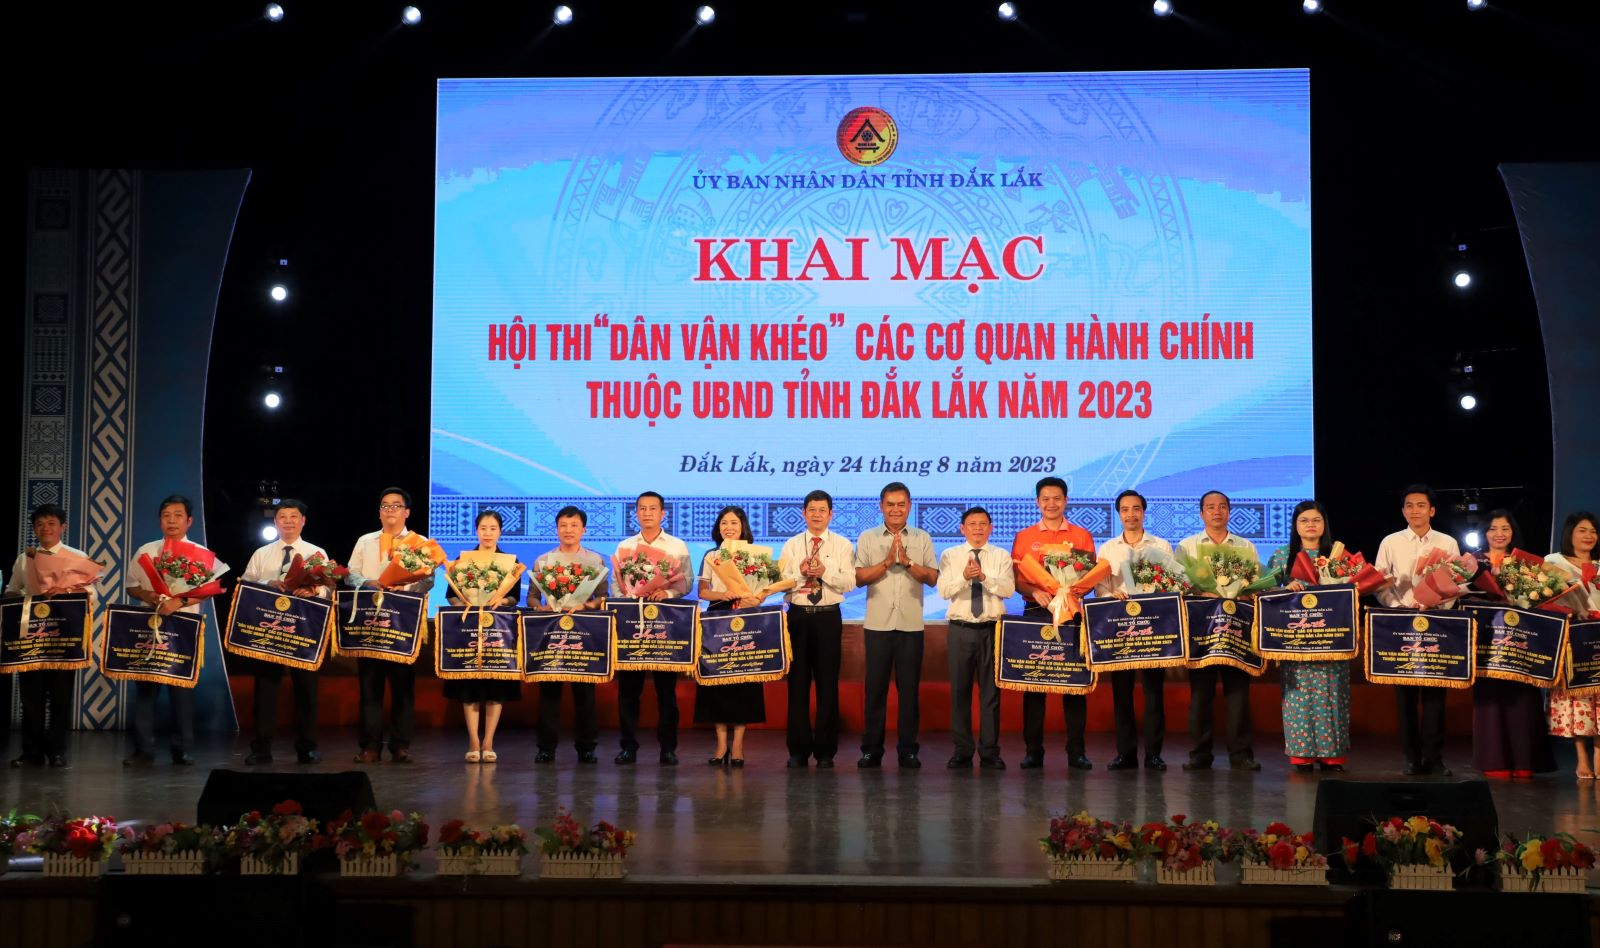 Khai mạc Hội thi “Dân vận khéo” các cơ quan hành chính thuộc UBND tỉnh Đắk Lắk năm 2023